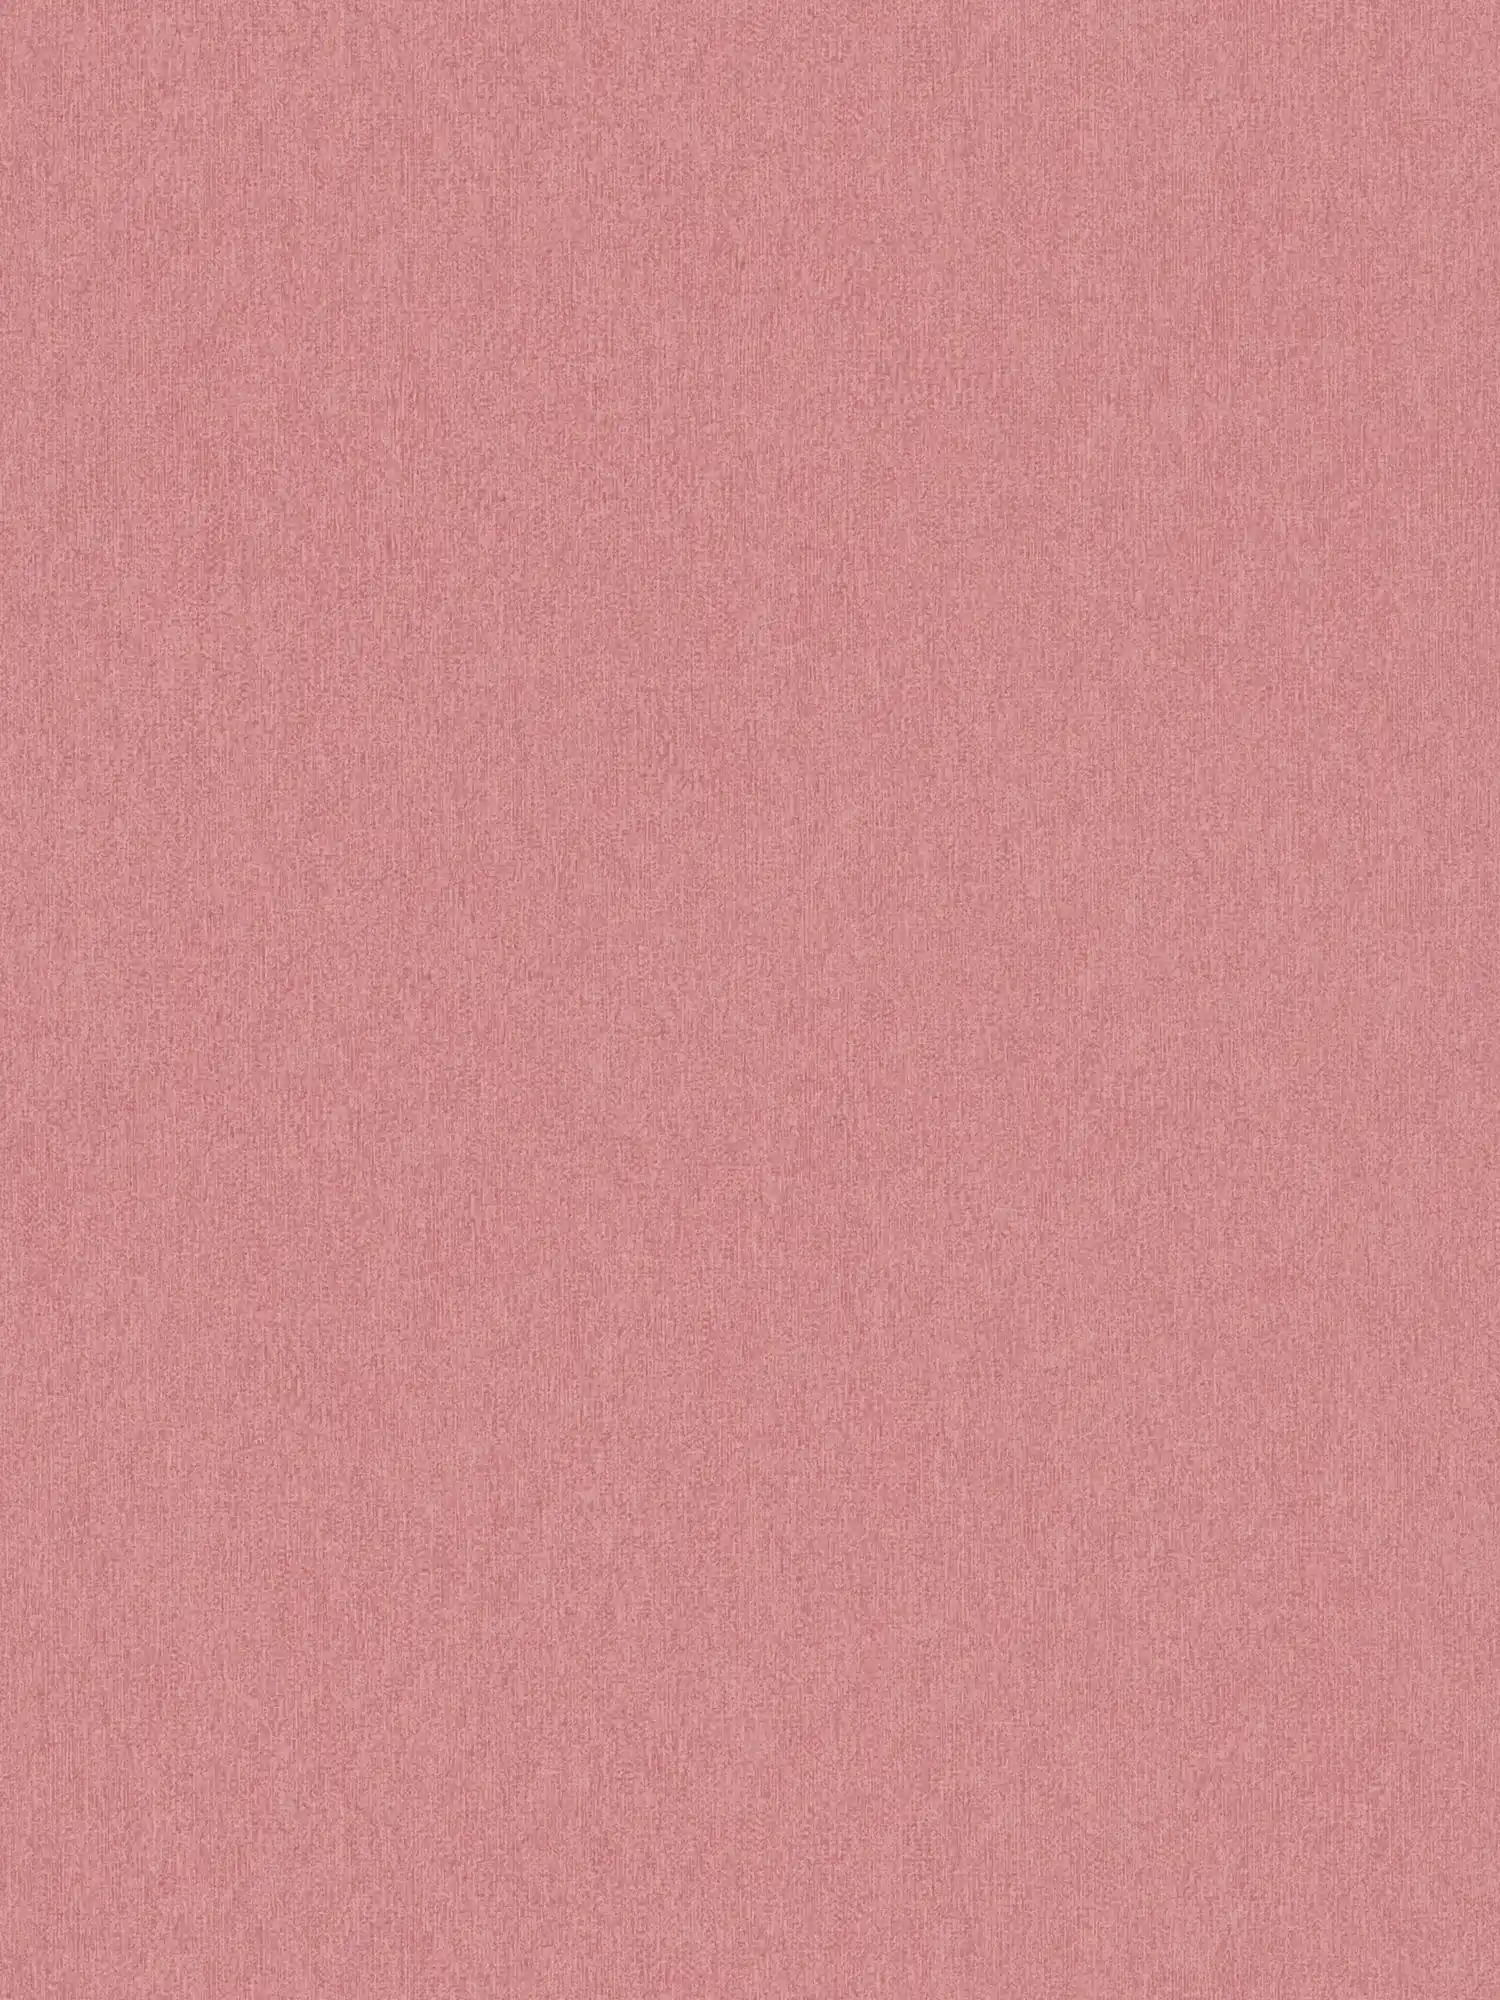 Non-woven wallpaper plain & matt with structure pattern - pink
